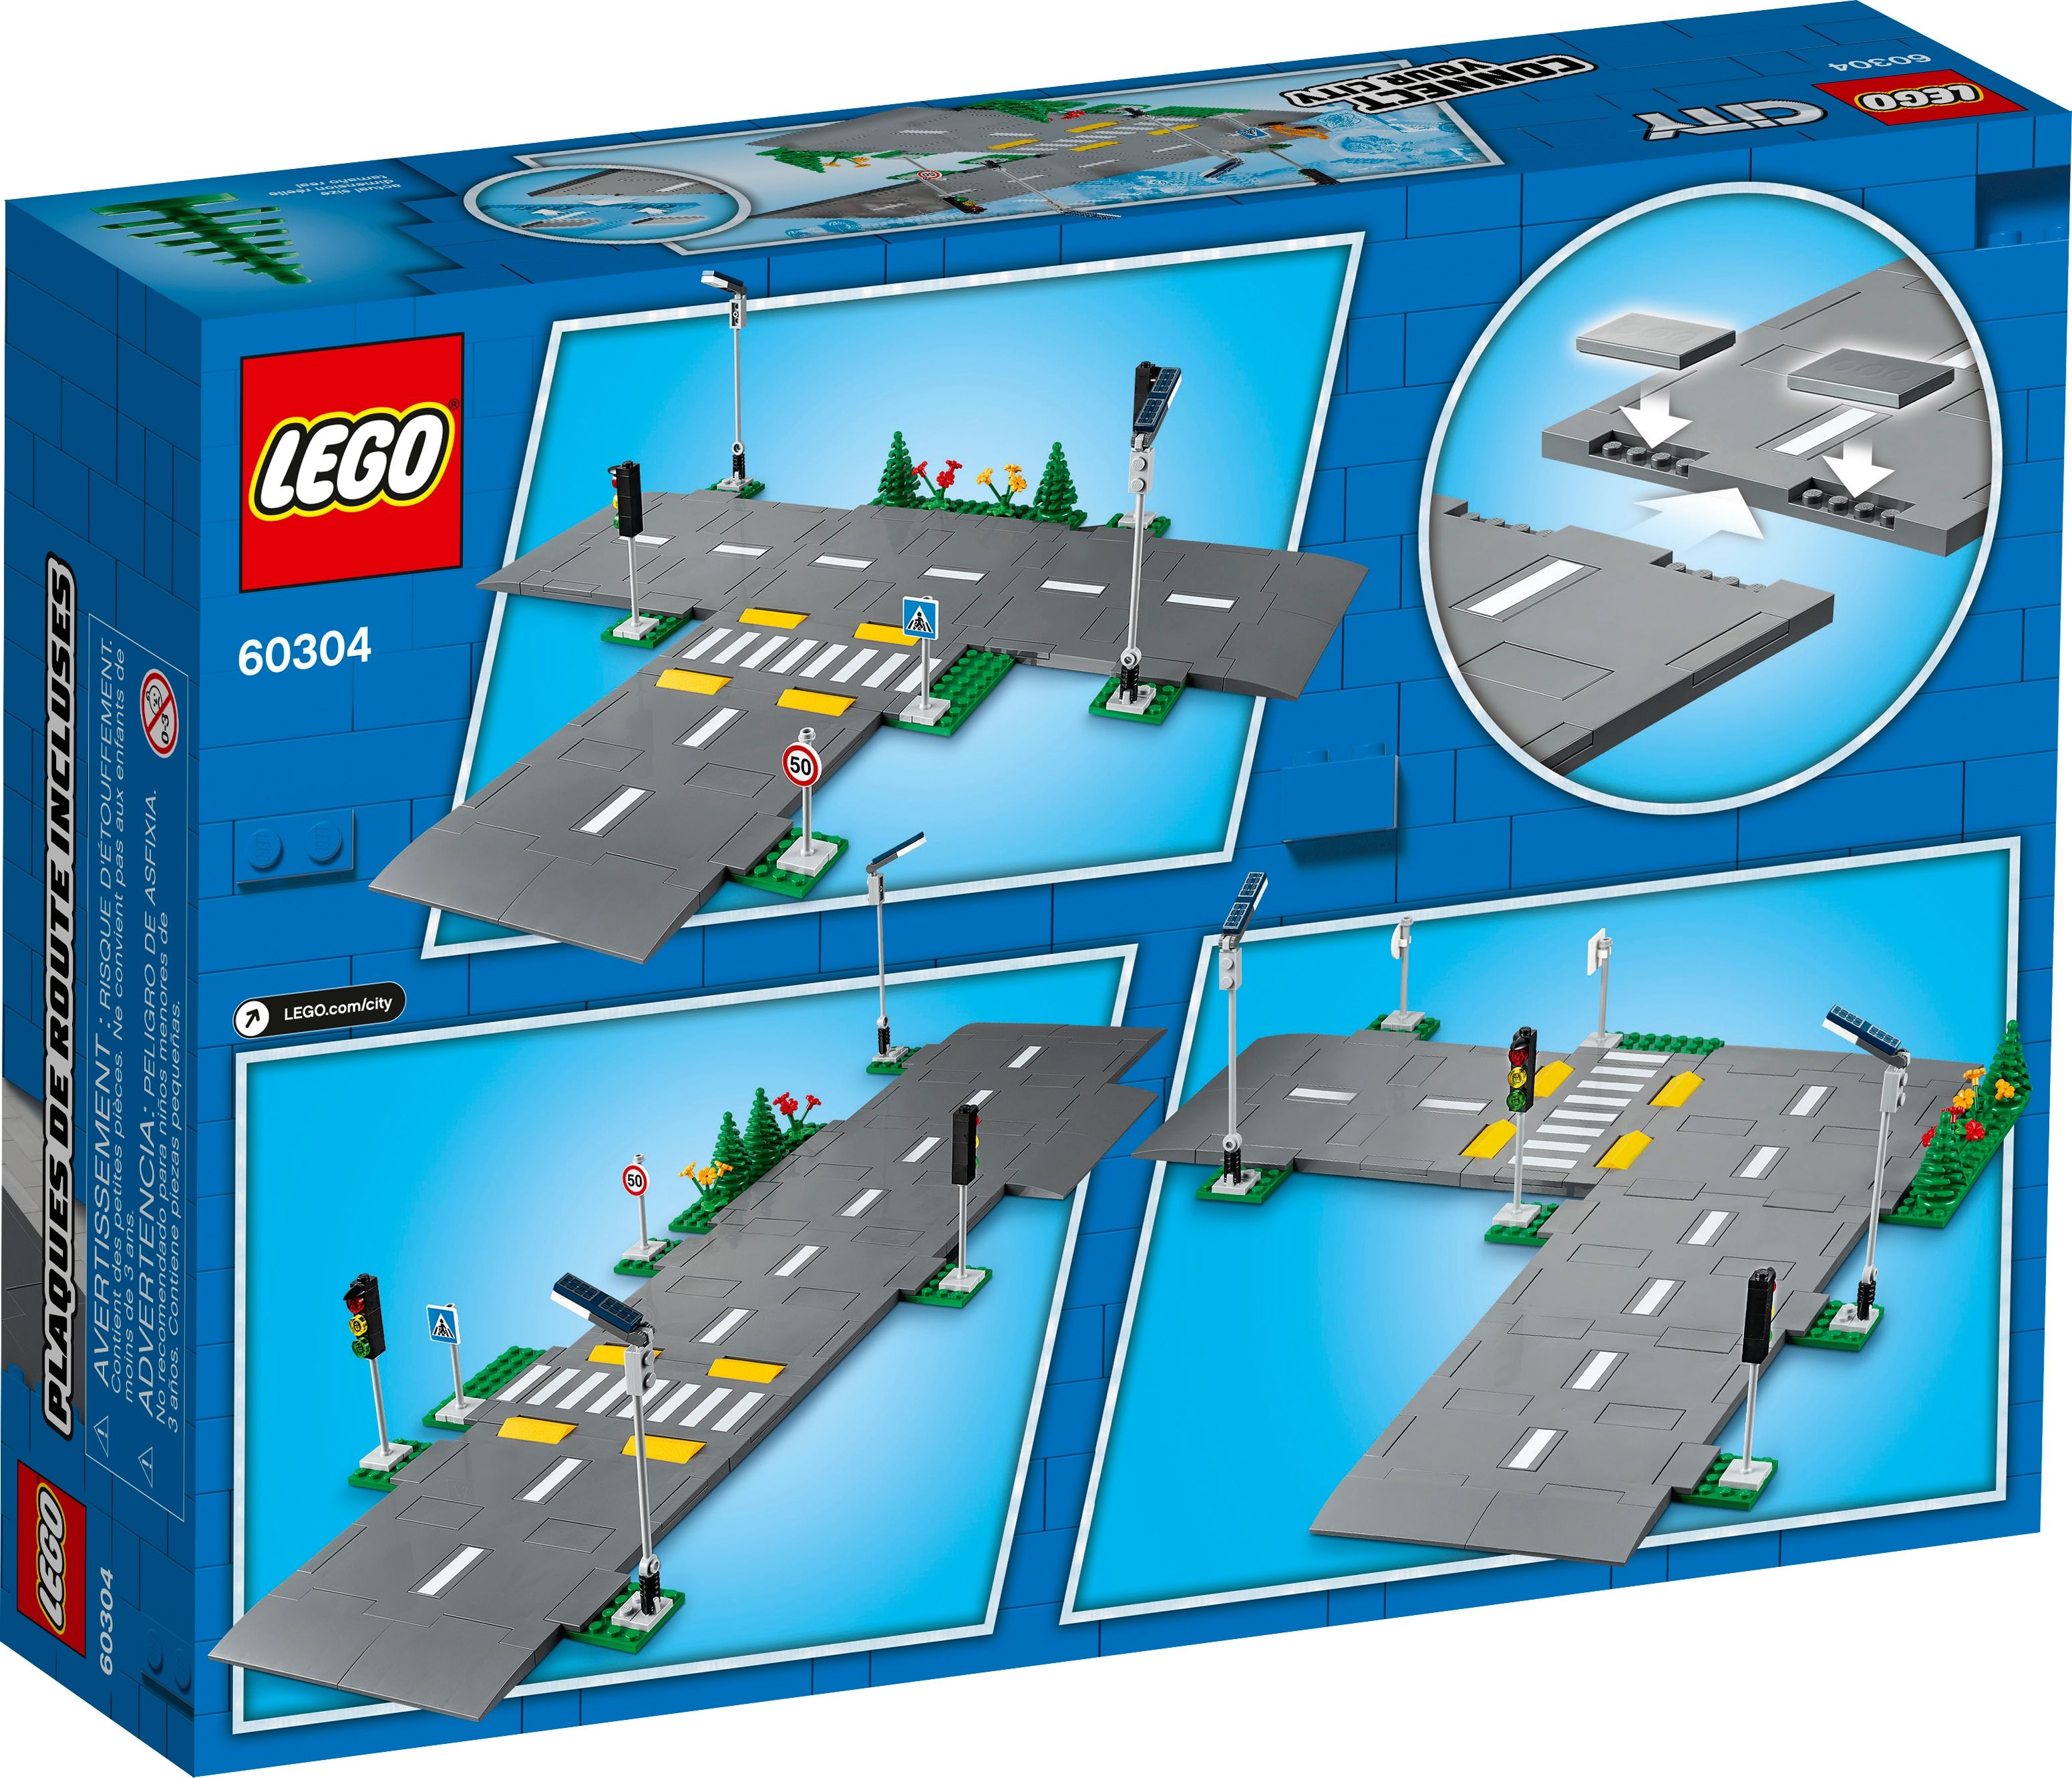 LEGO City 60304 Straßenkreuzung mit Ampeln LEGO_60304_box5_v39.jpg